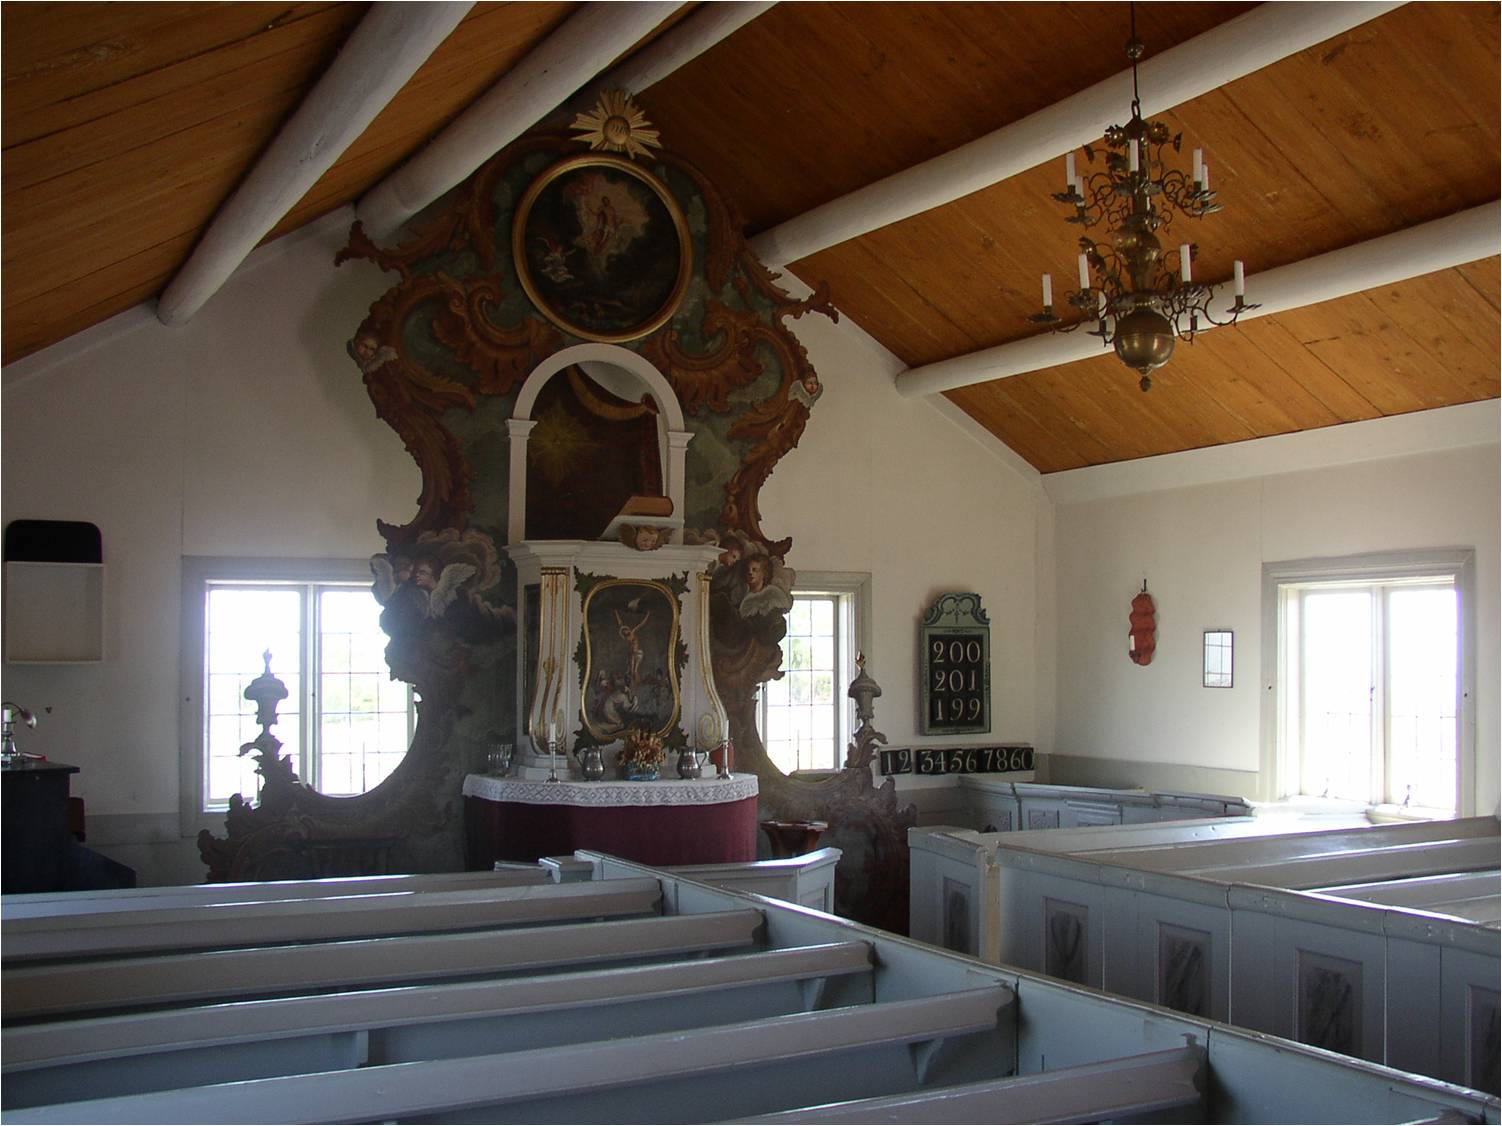 Kapellets interiör från nordväst med den stora altaruppsatsen mot kapellets östra vägg. 